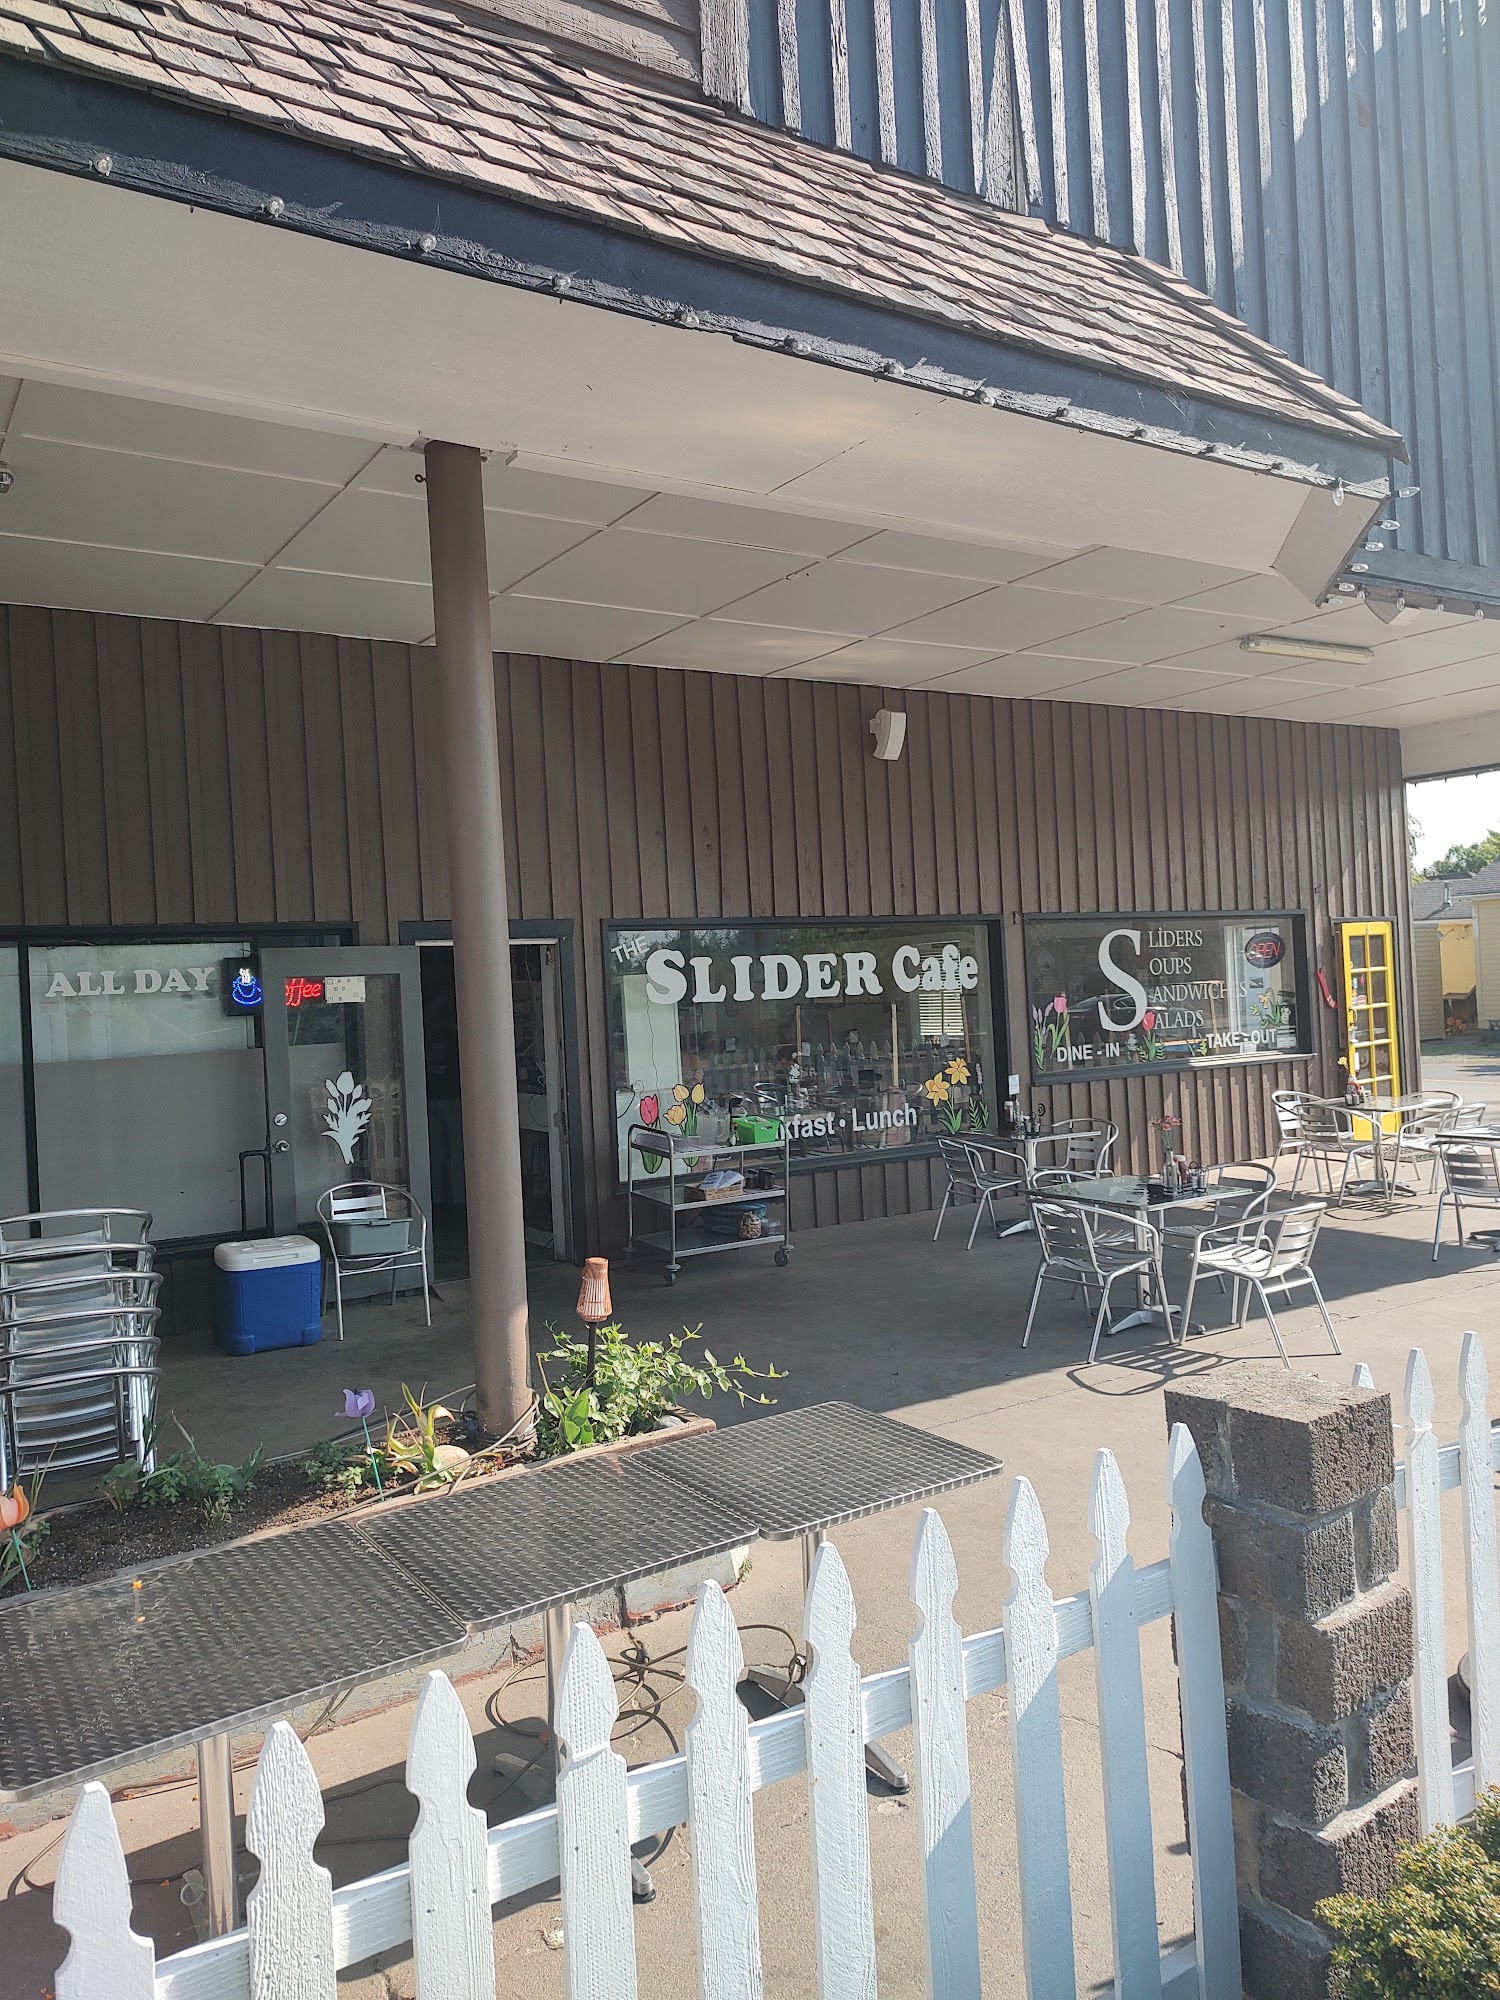 The Slider Cafe